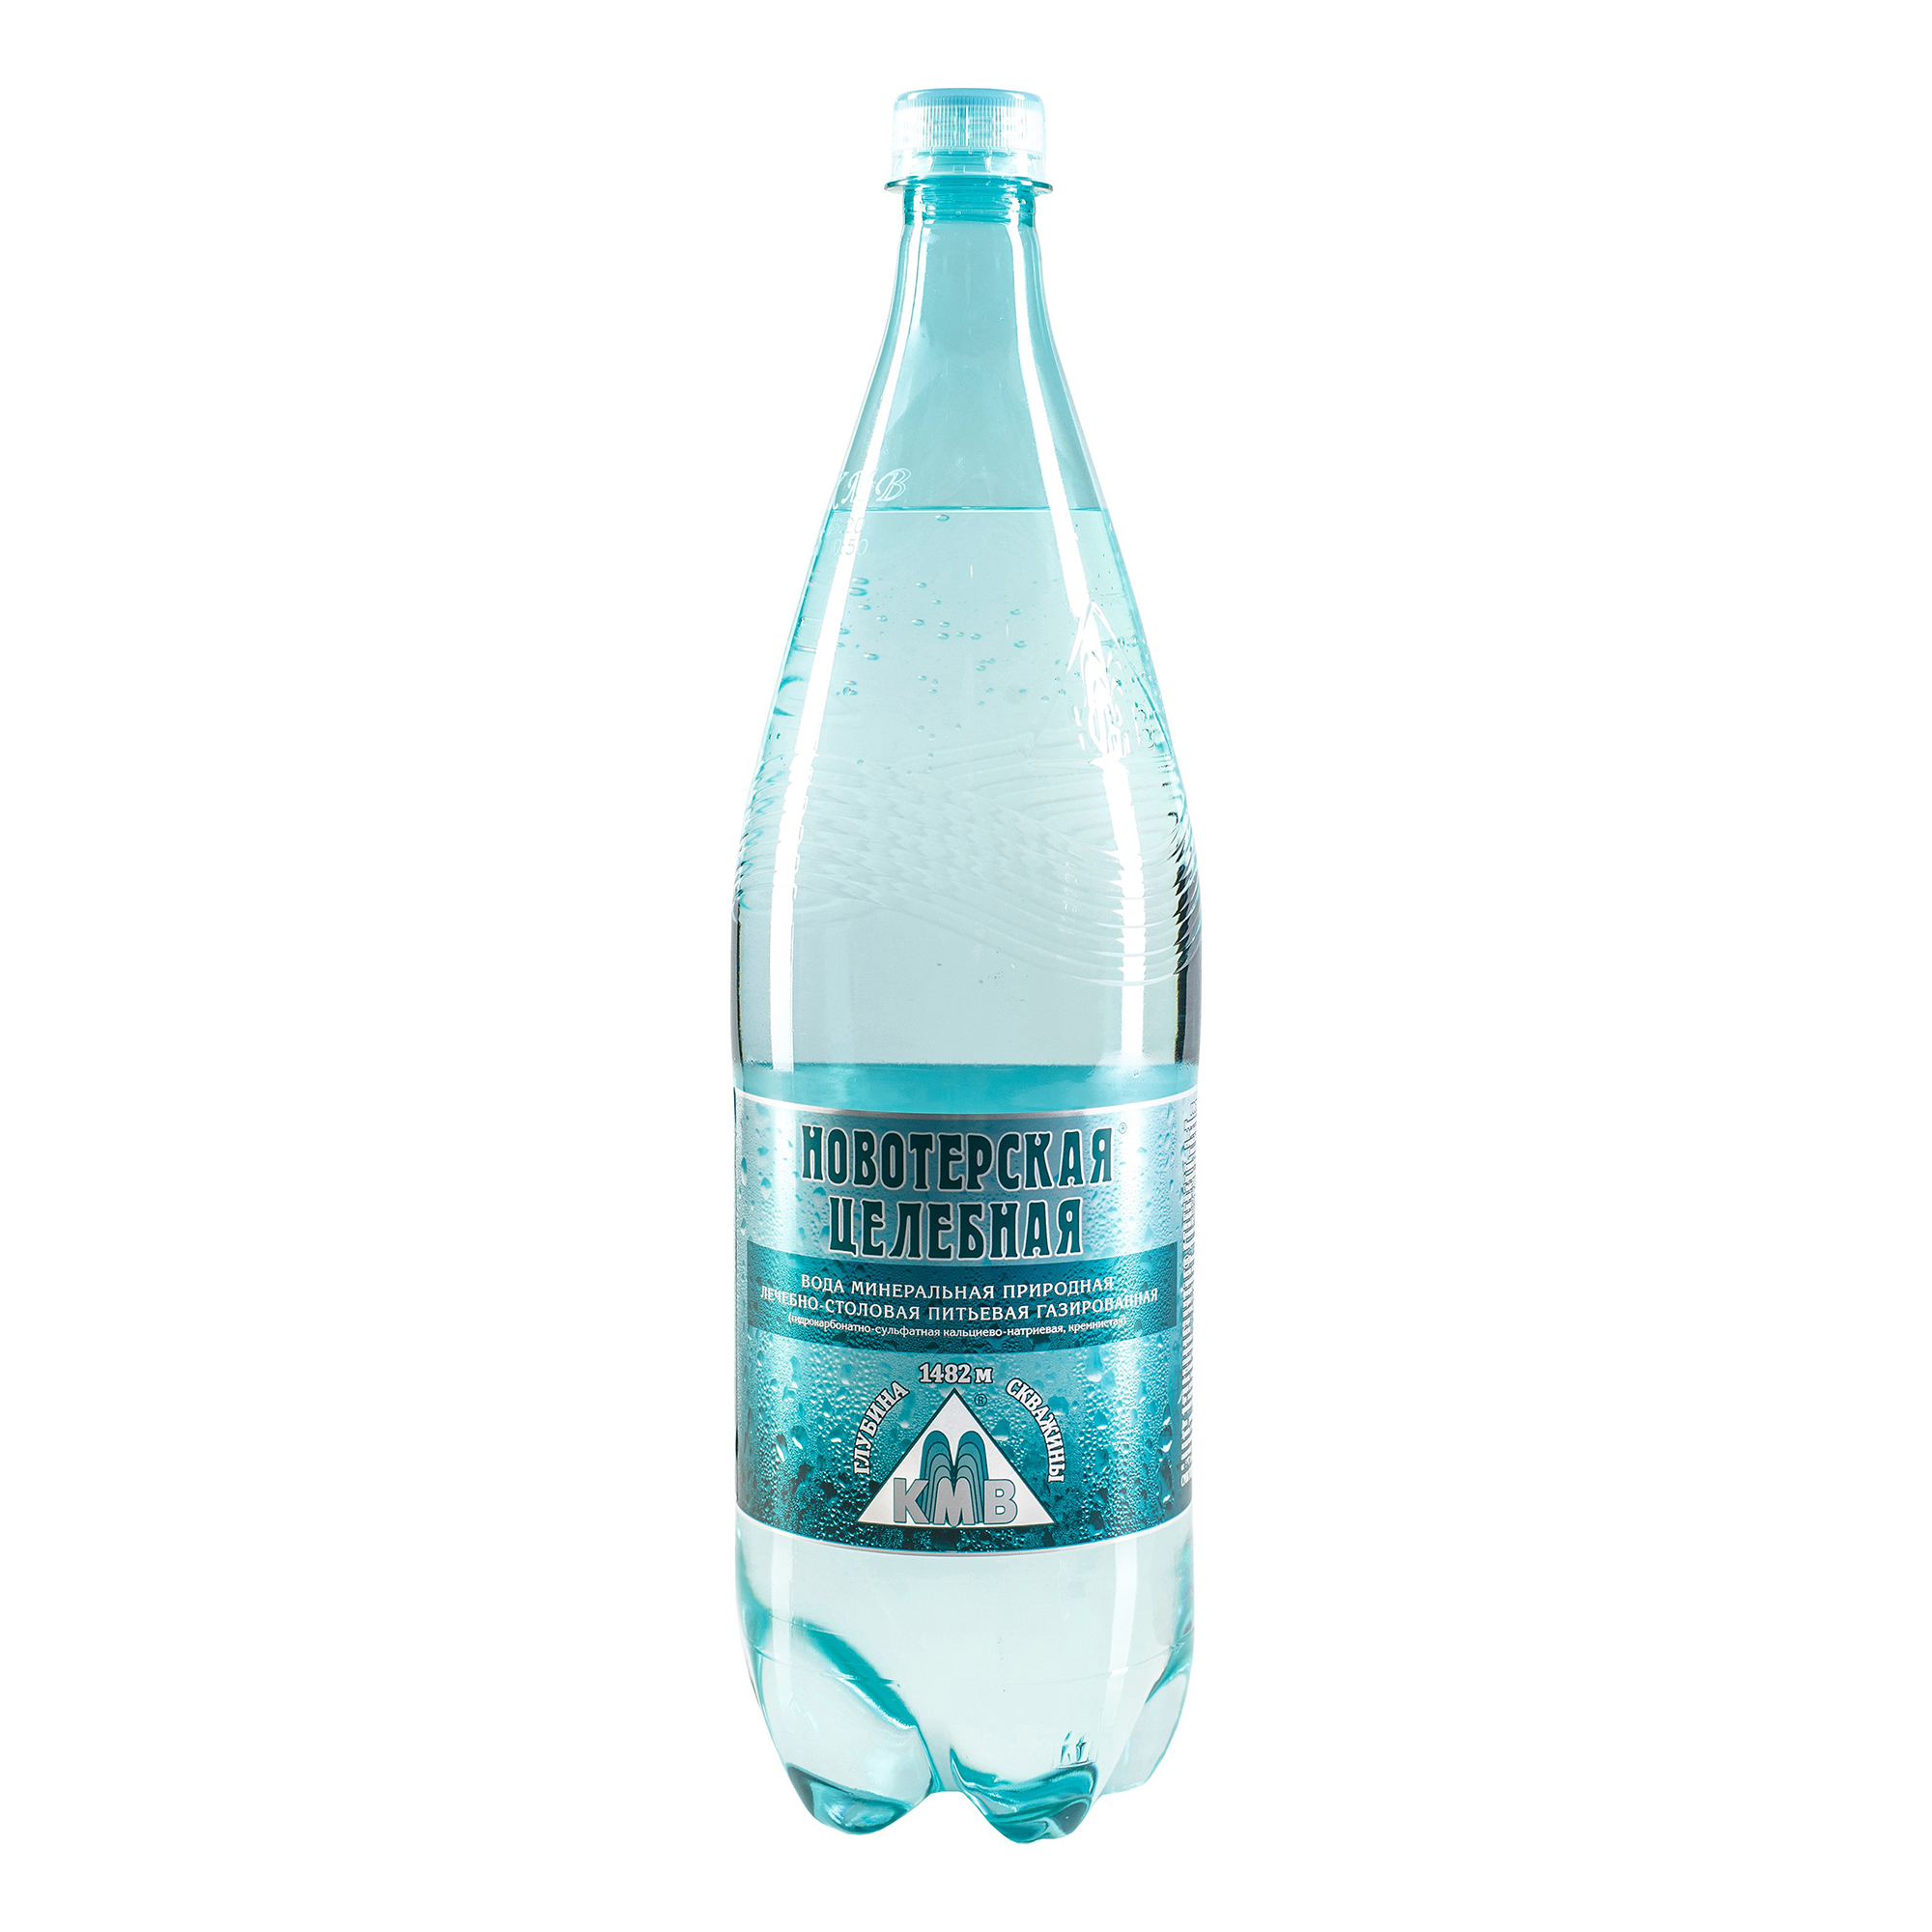 Вода минеральная Новотерская целебная питьевая лечебно-столовая газированная пластик 1.5 л